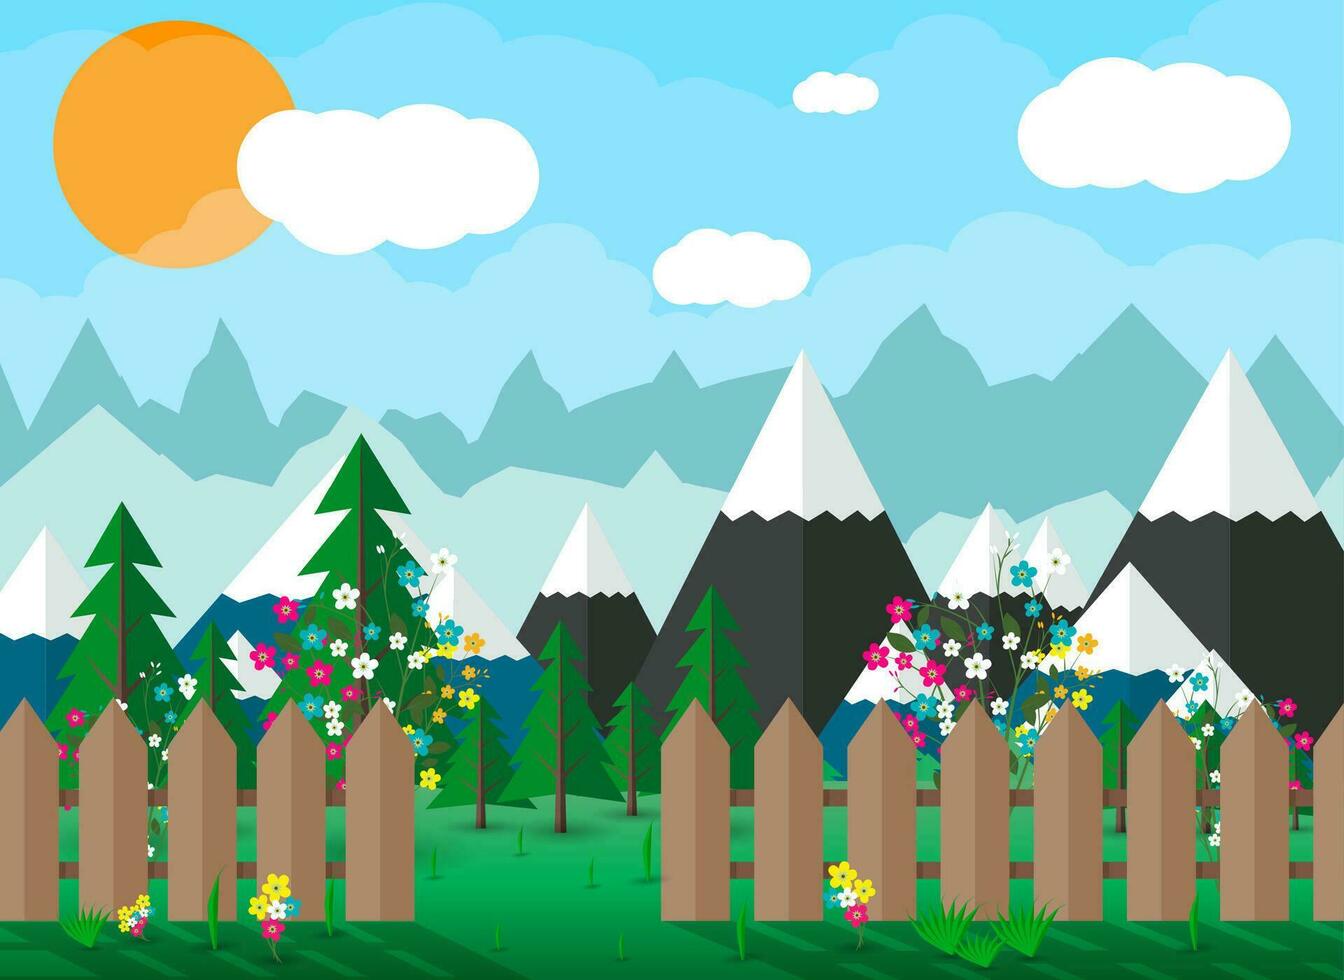 Landschaft von Berge, Blumen, hölzern Zaun, Bäume, Blau Himmel mit Wolken und Sonne. Vektor Illustration im eben Stil